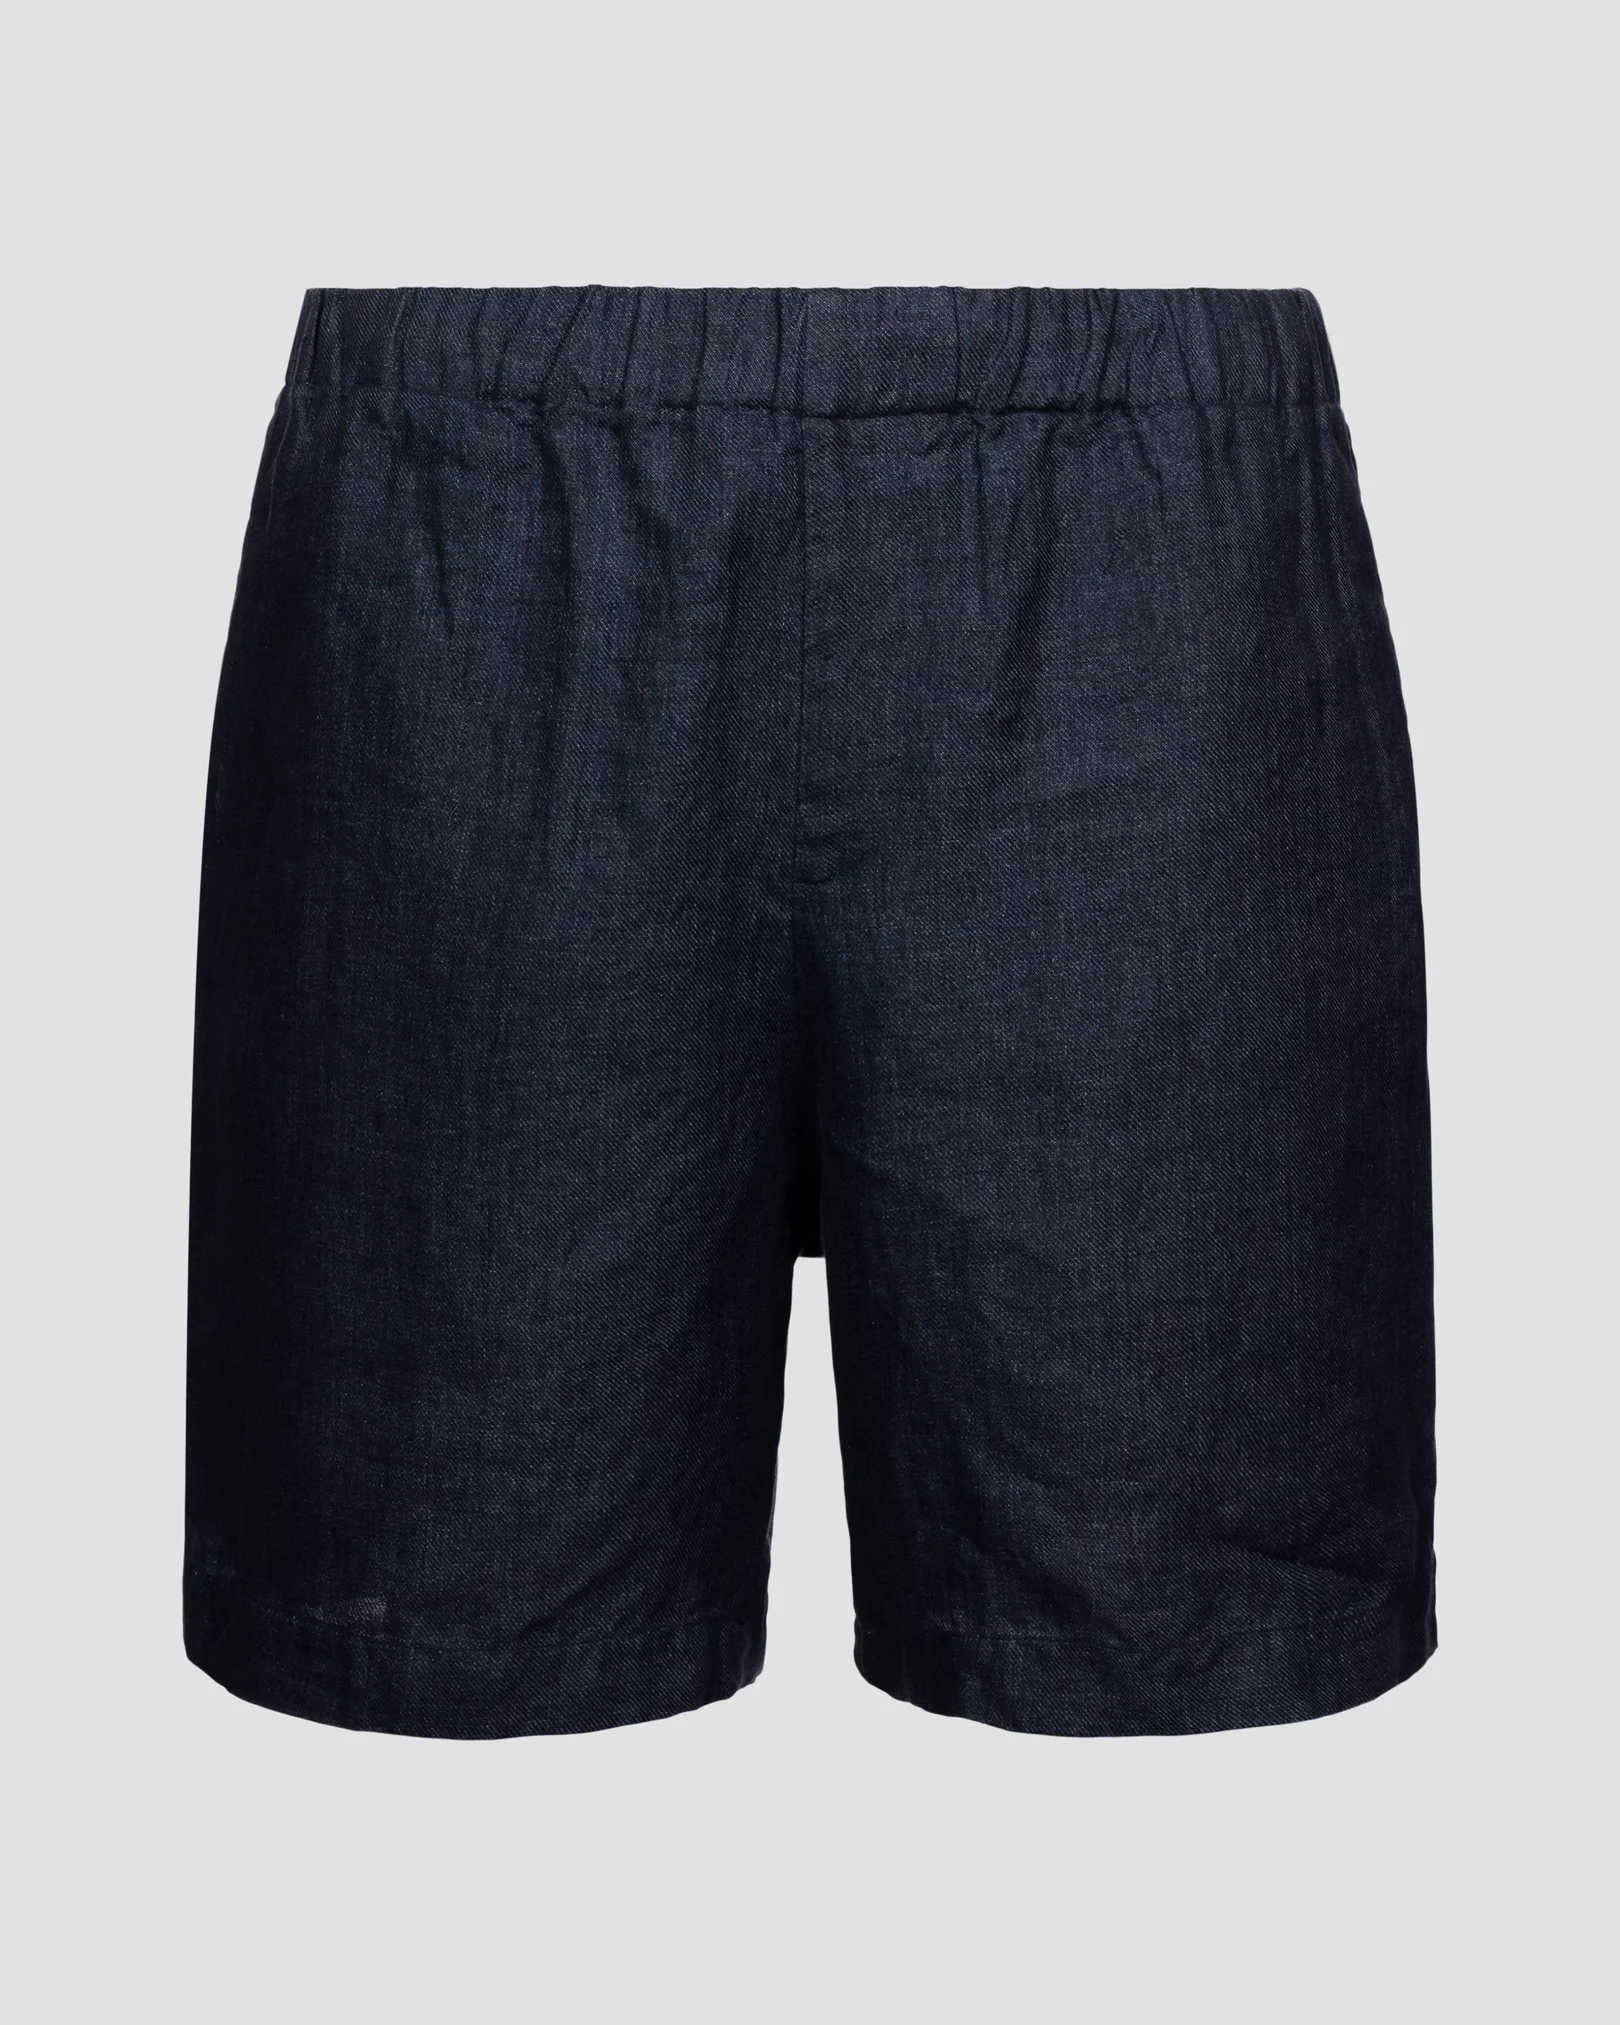 Navyblaue Shorts aus schwerem Leinen